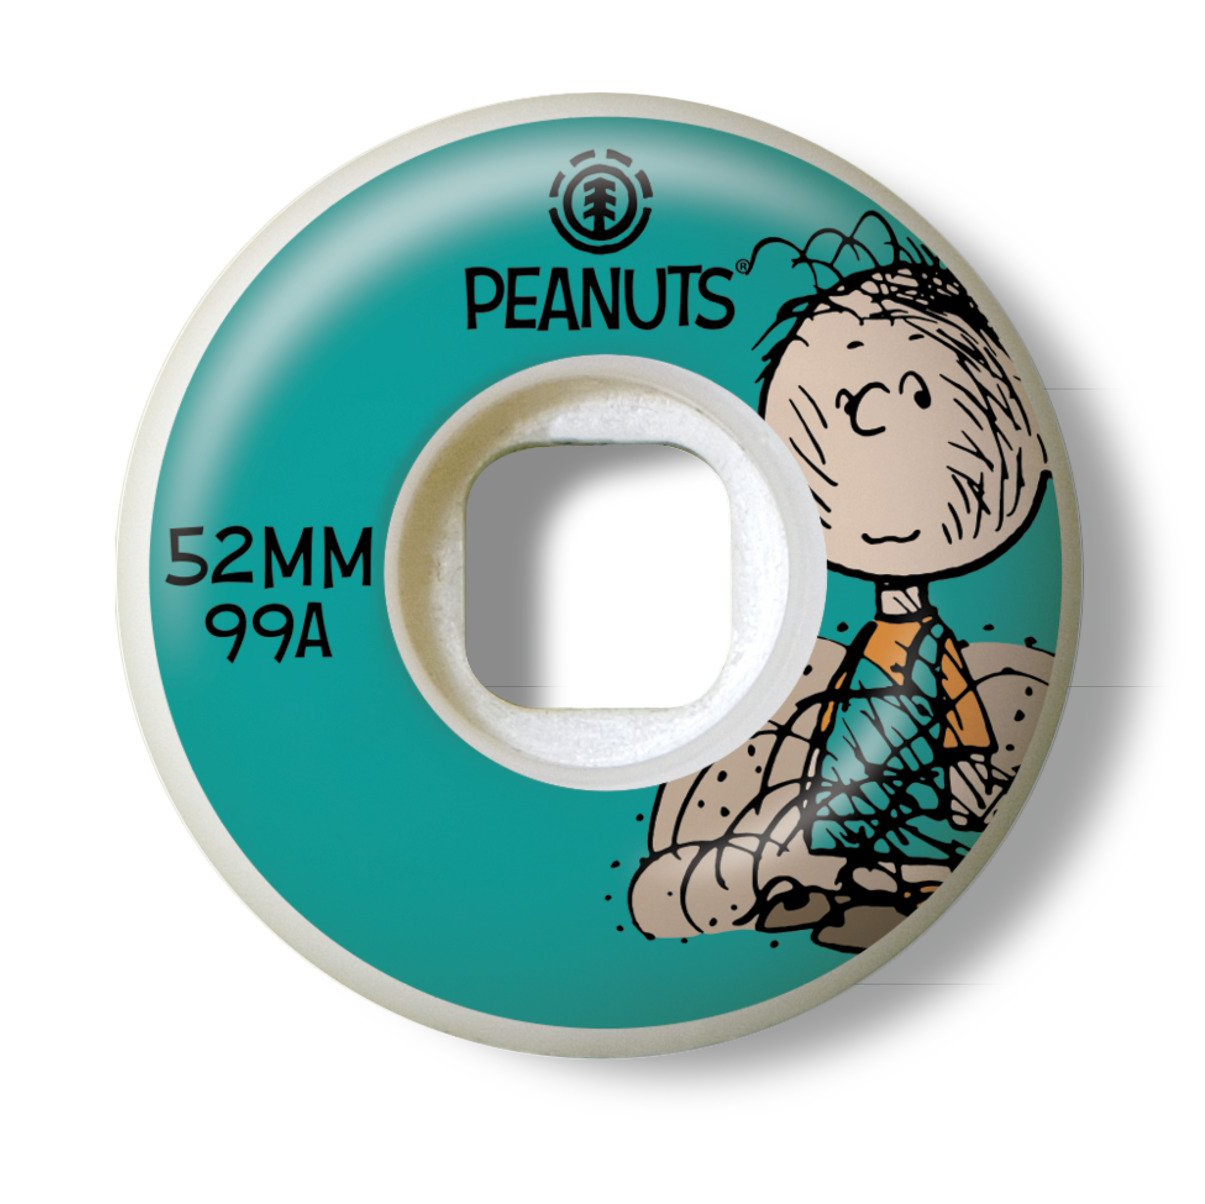 52 сквад. Element Peanuts Squad 52mm. Колеса element. Колеса element trip out 52mm. Element penuts скейт комплект.